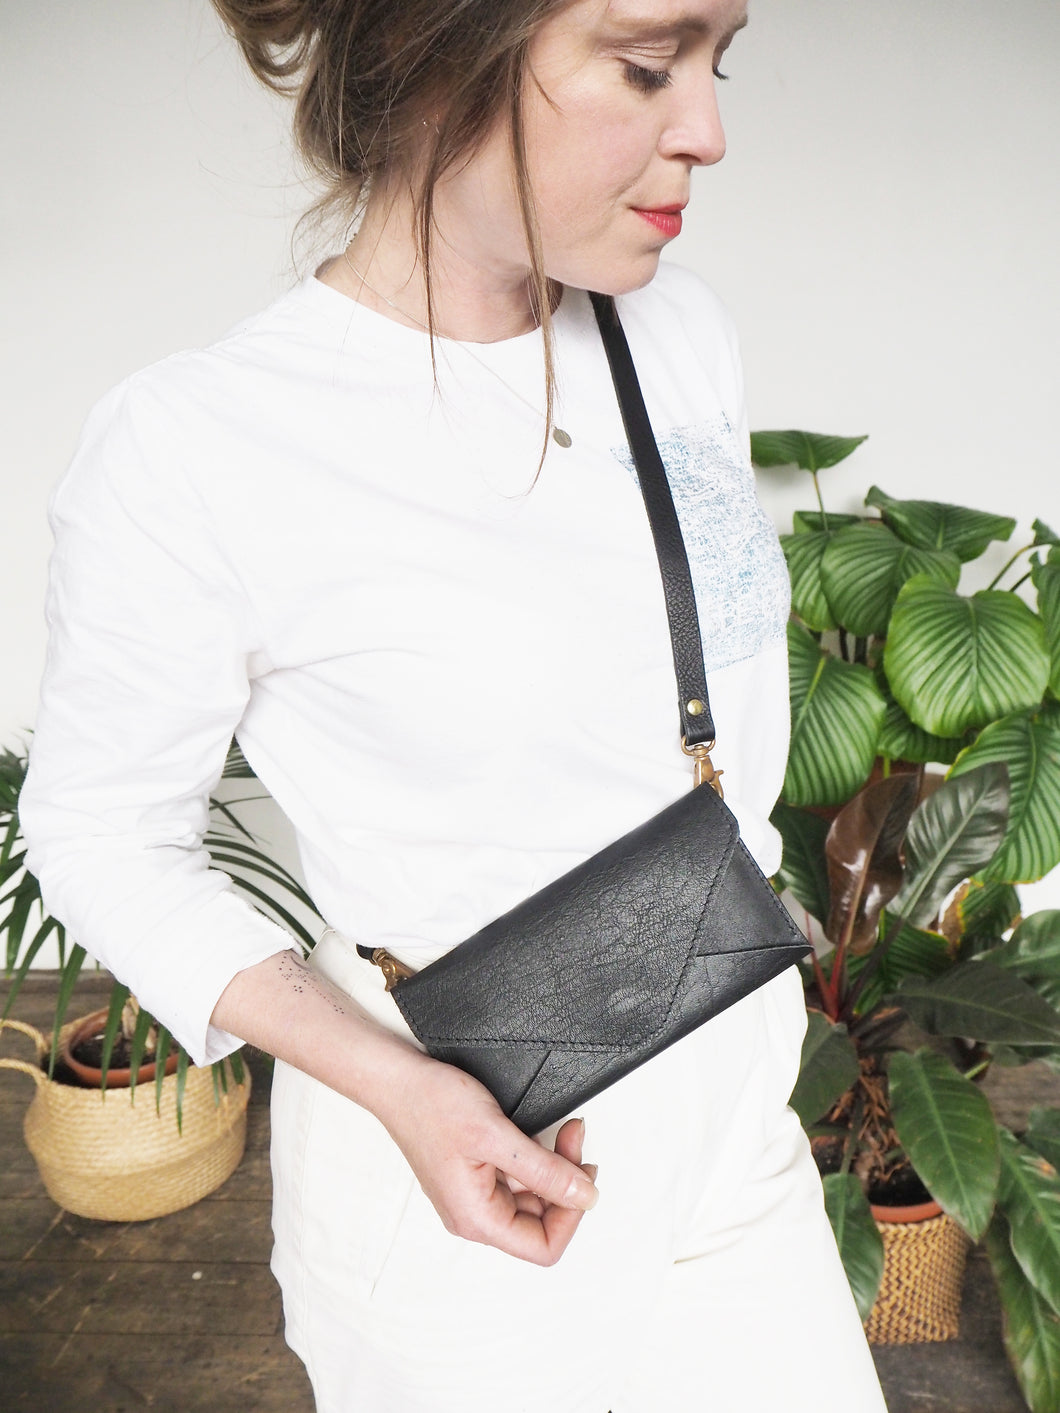 Olivia Black Envelope Purse with detachable strap – bluehourlondon